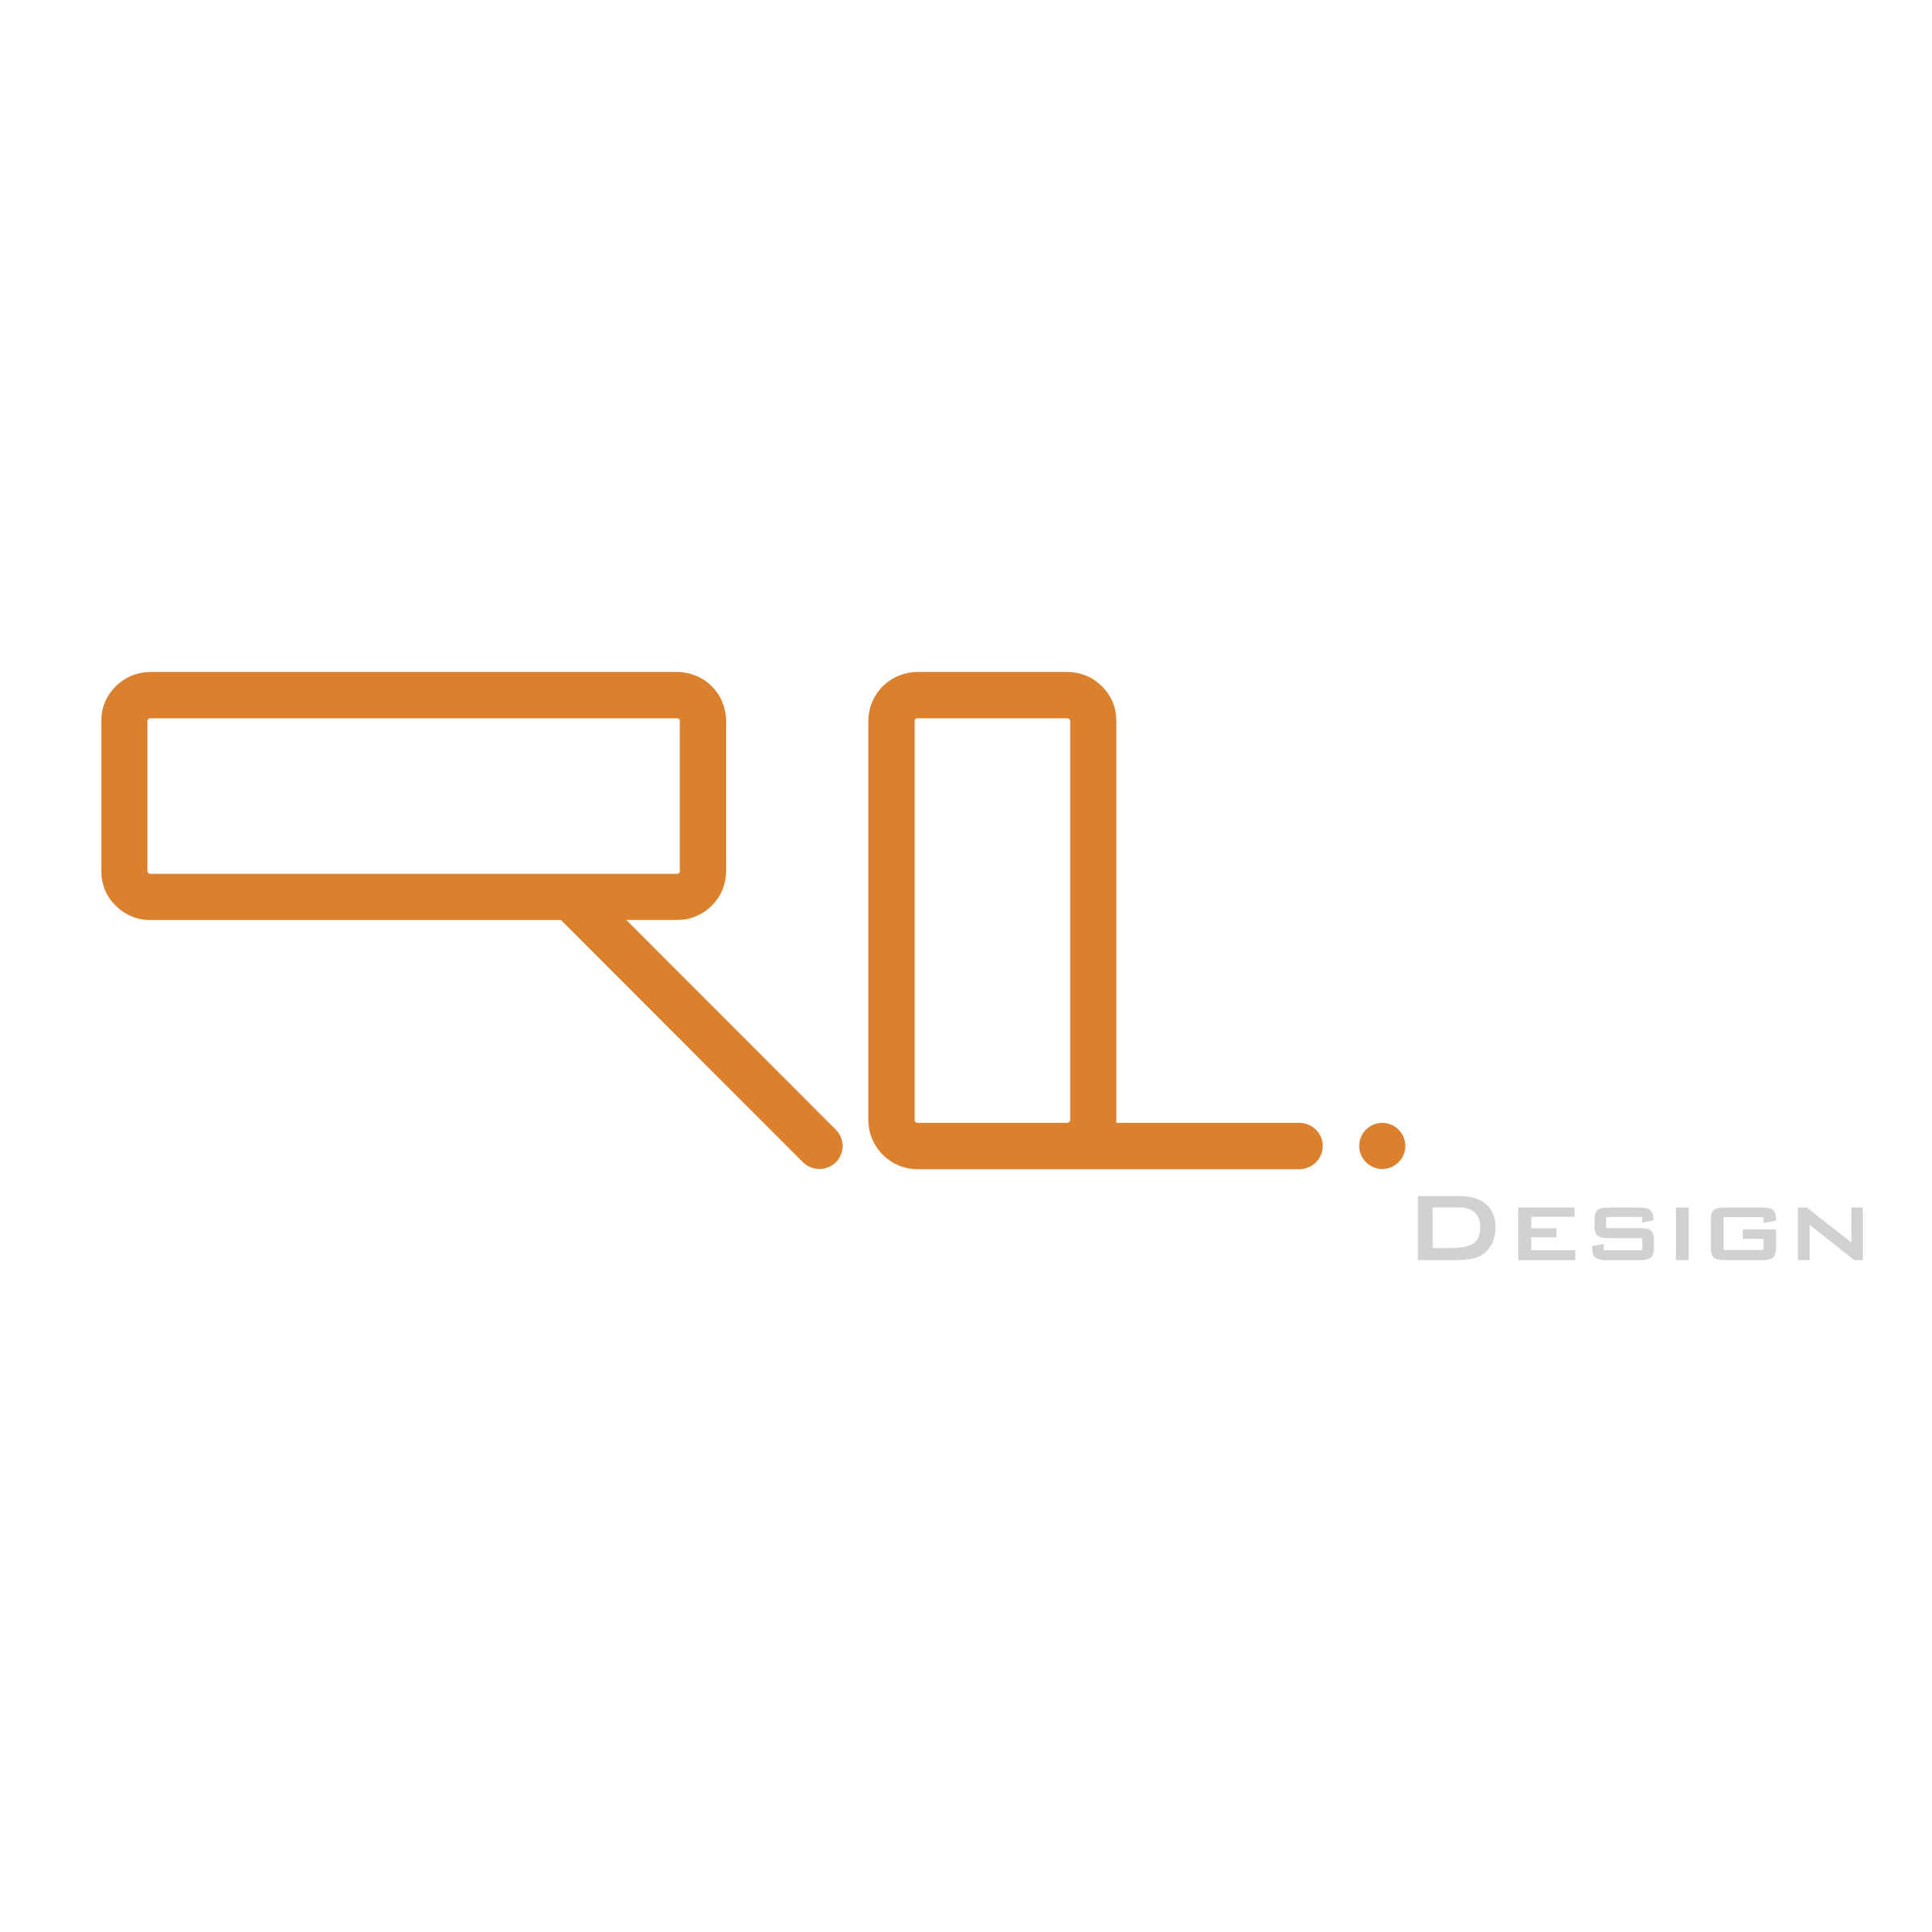 RL Logo - RL DESIGN Logo PNG Transparent & SVG Vector